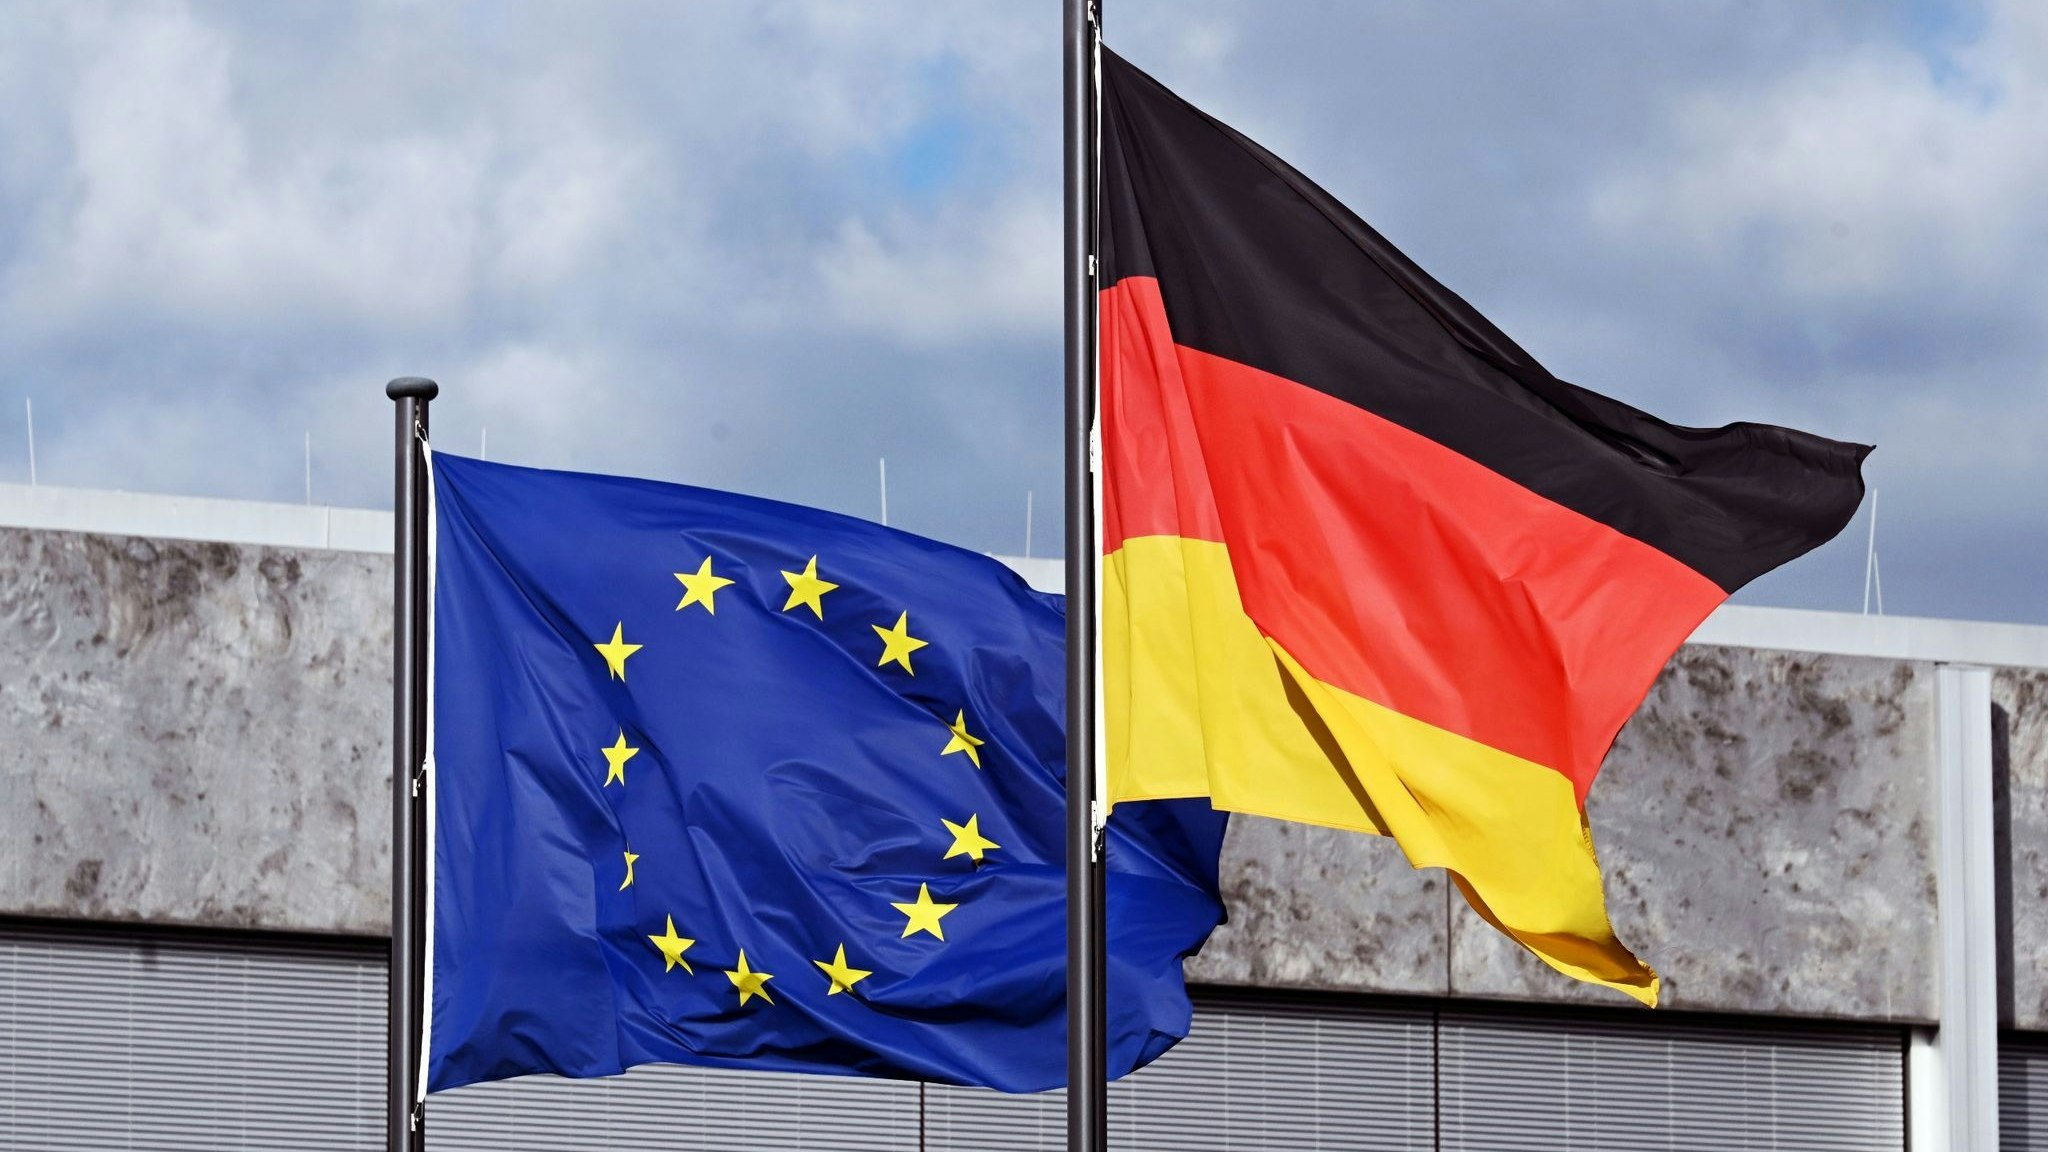 Vor dem Bundesverfassungsgericht in Karlsruhe wehen die Europa- und die Deutschlandflagge. Foto: dpa/Deck